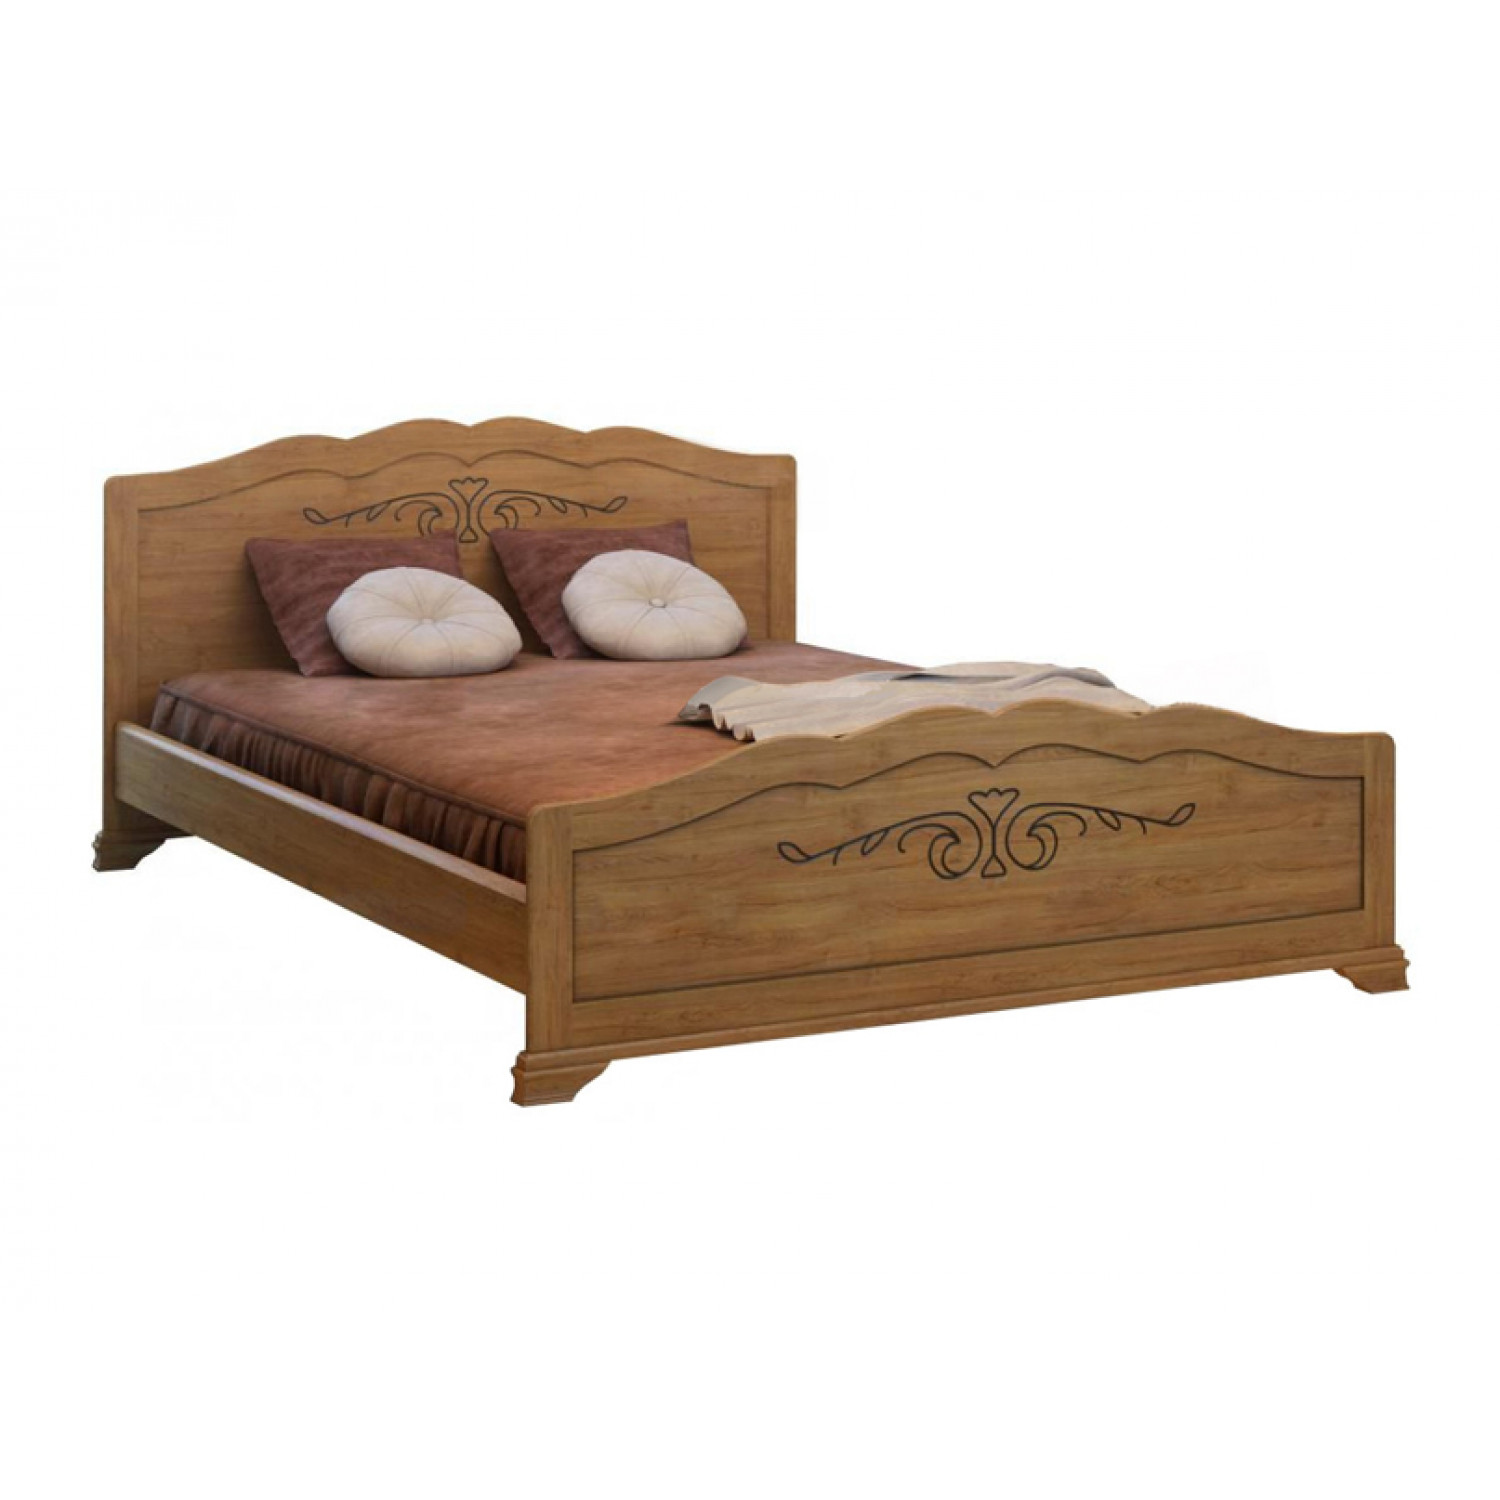 Купить деревянную кровать недорого. Кровать Сатори из массива дерева.